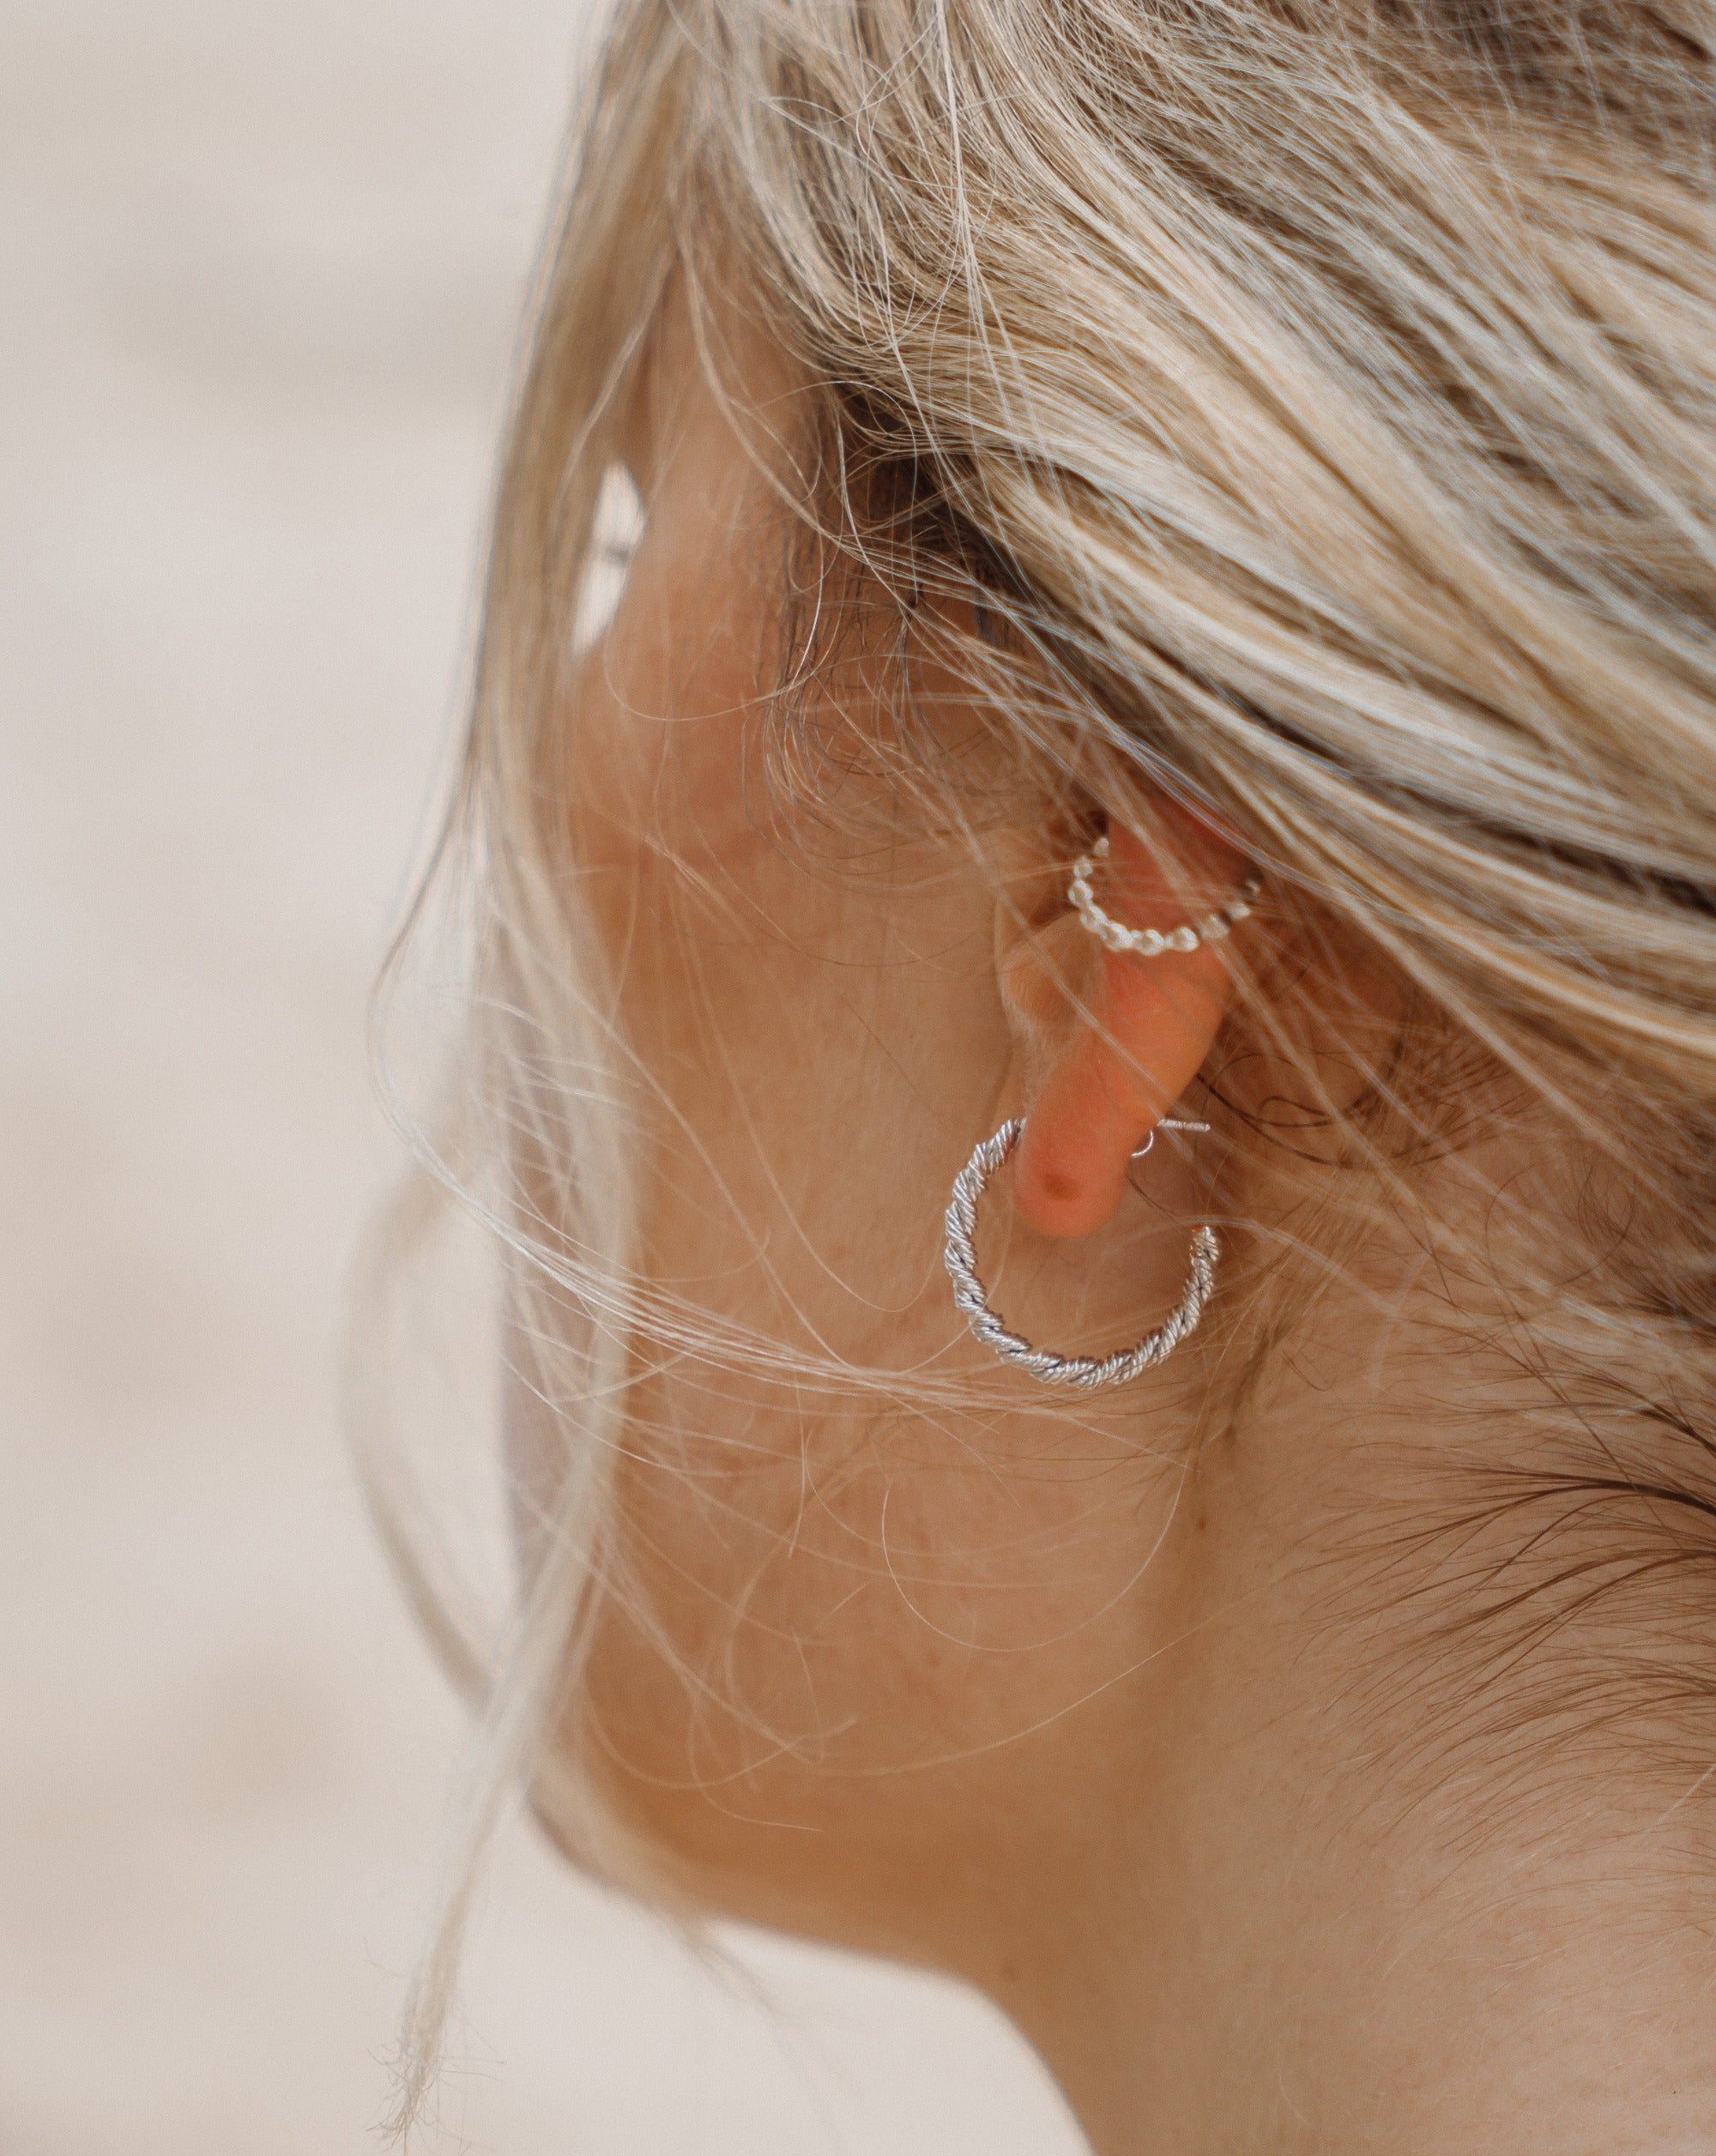 Handgemachte Ohrringe | eingedreht | 925 Silber - wasserfest | Fair und umweltschonend auf Bali handgefertigt | CERIA Earrings | VERLAN Jewellery | Fairfashion | Bali Vibes